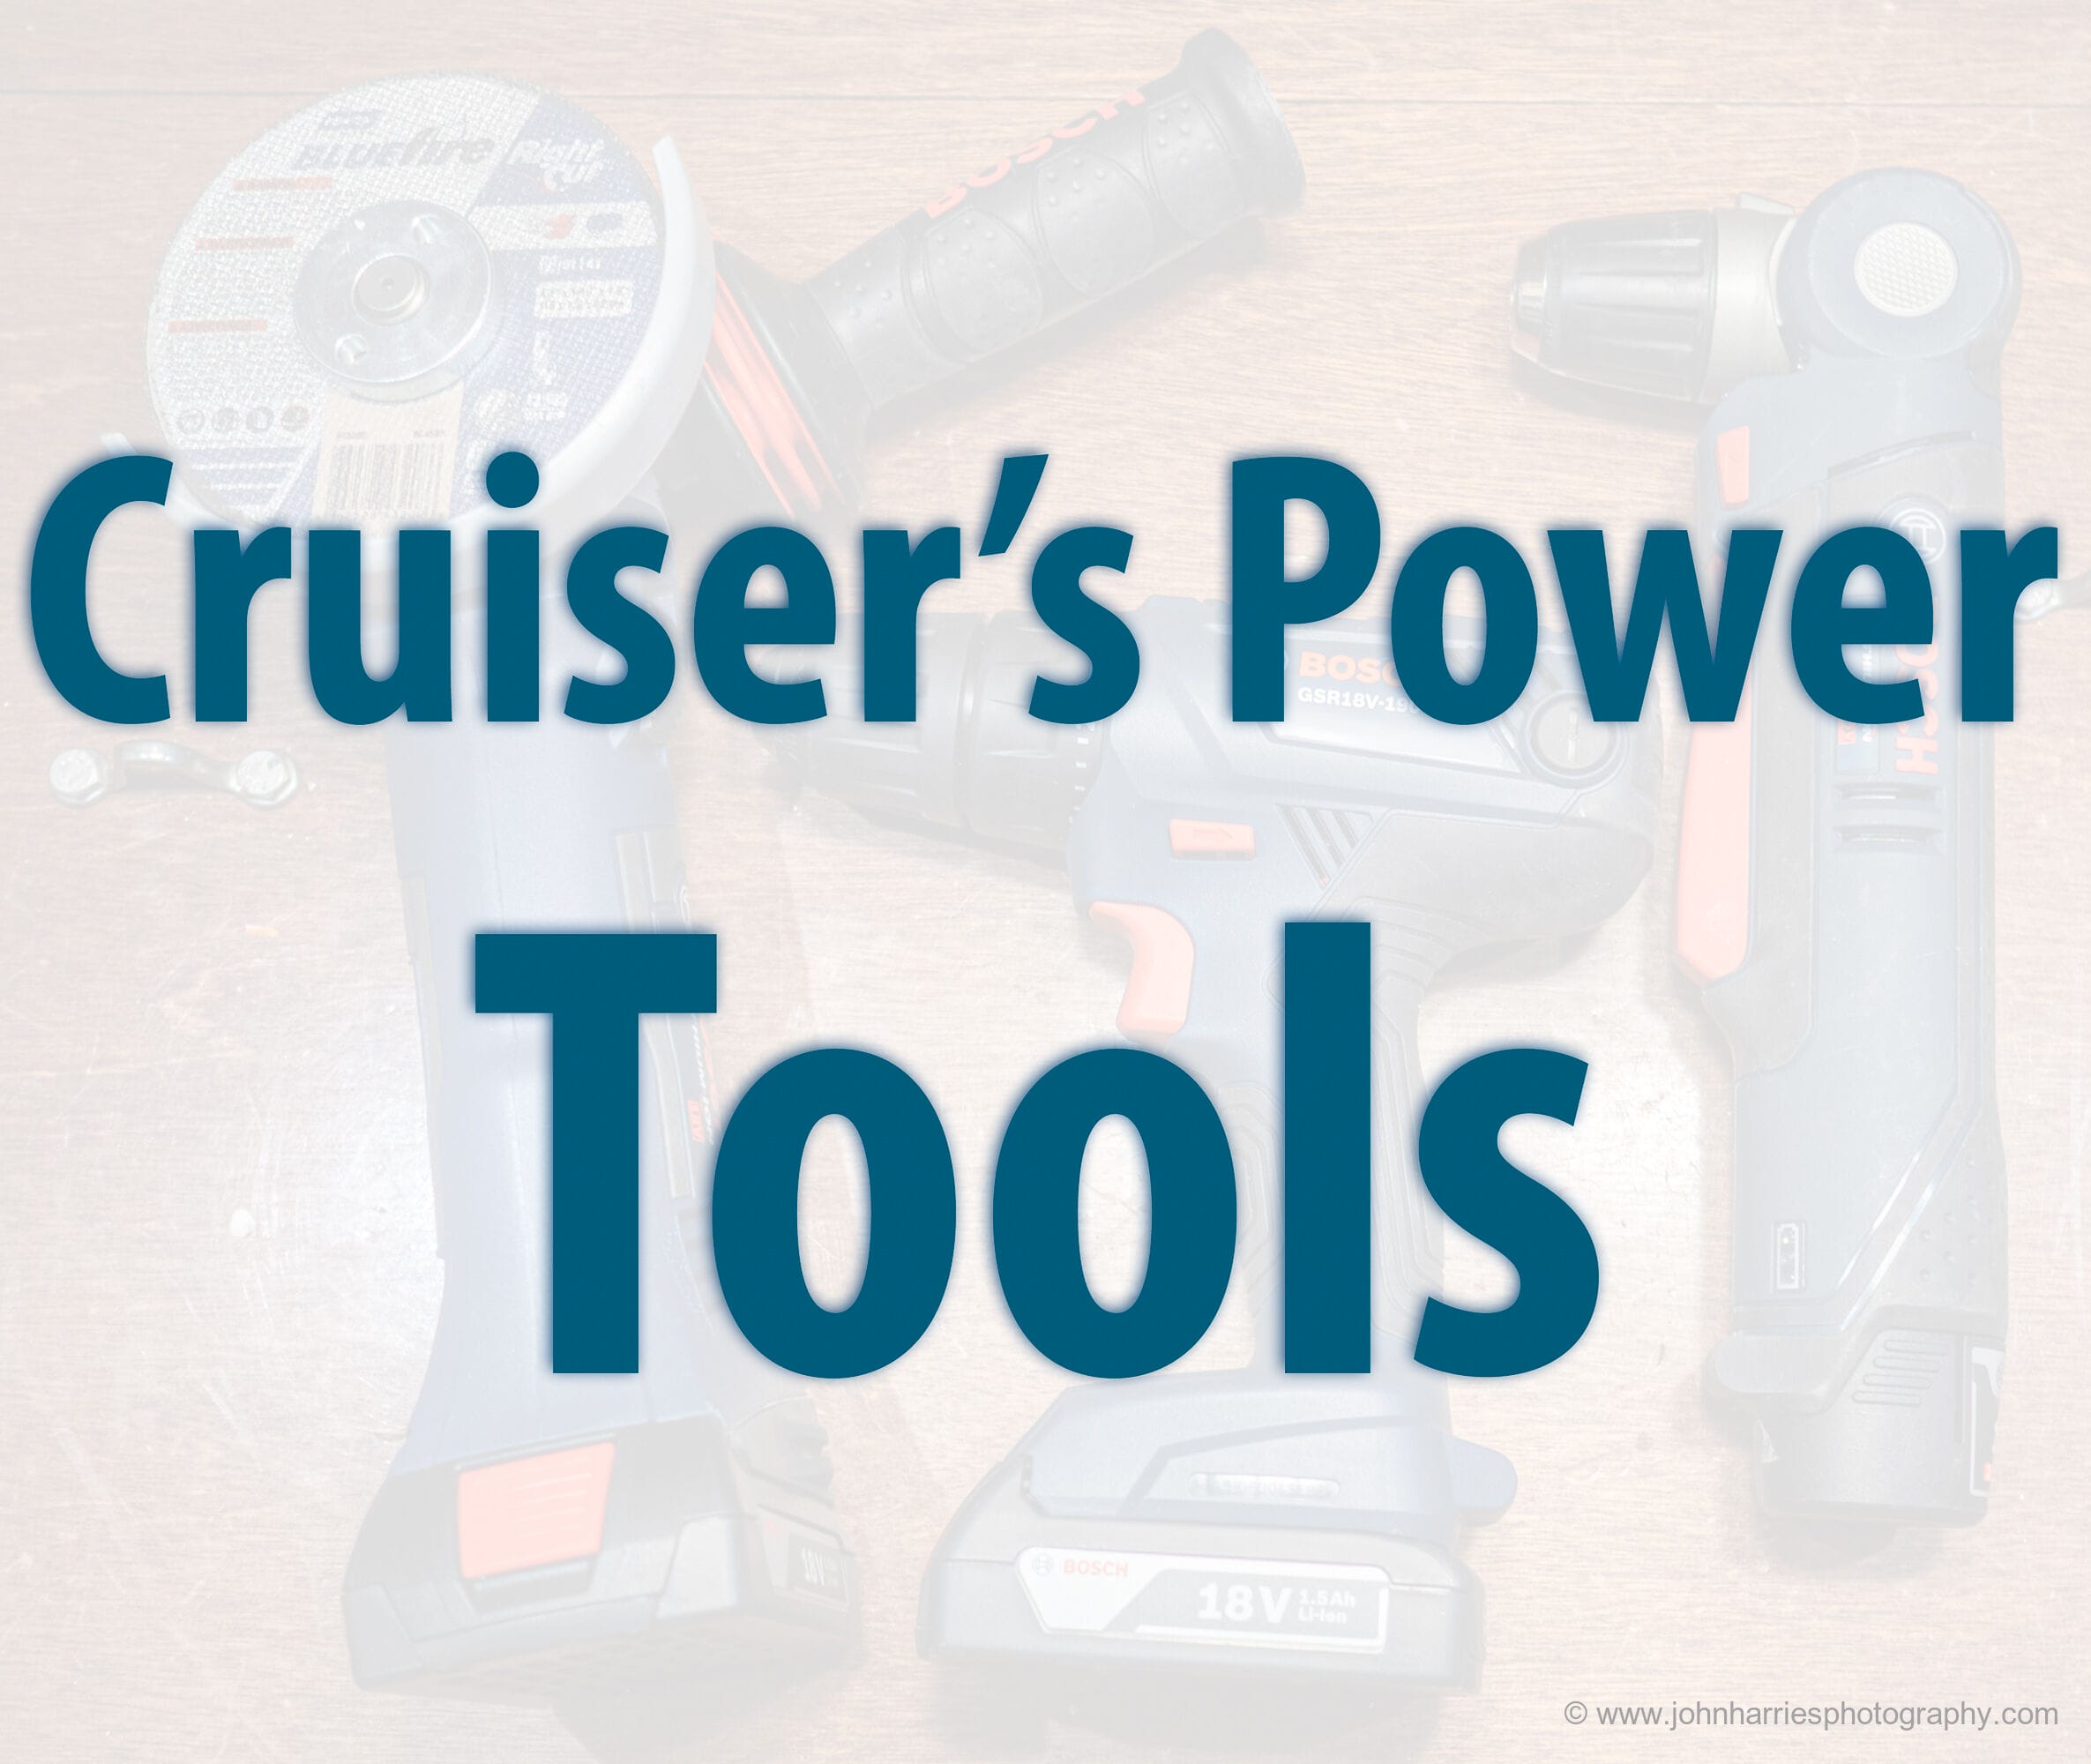 Cruiser’s Power Tool Kit